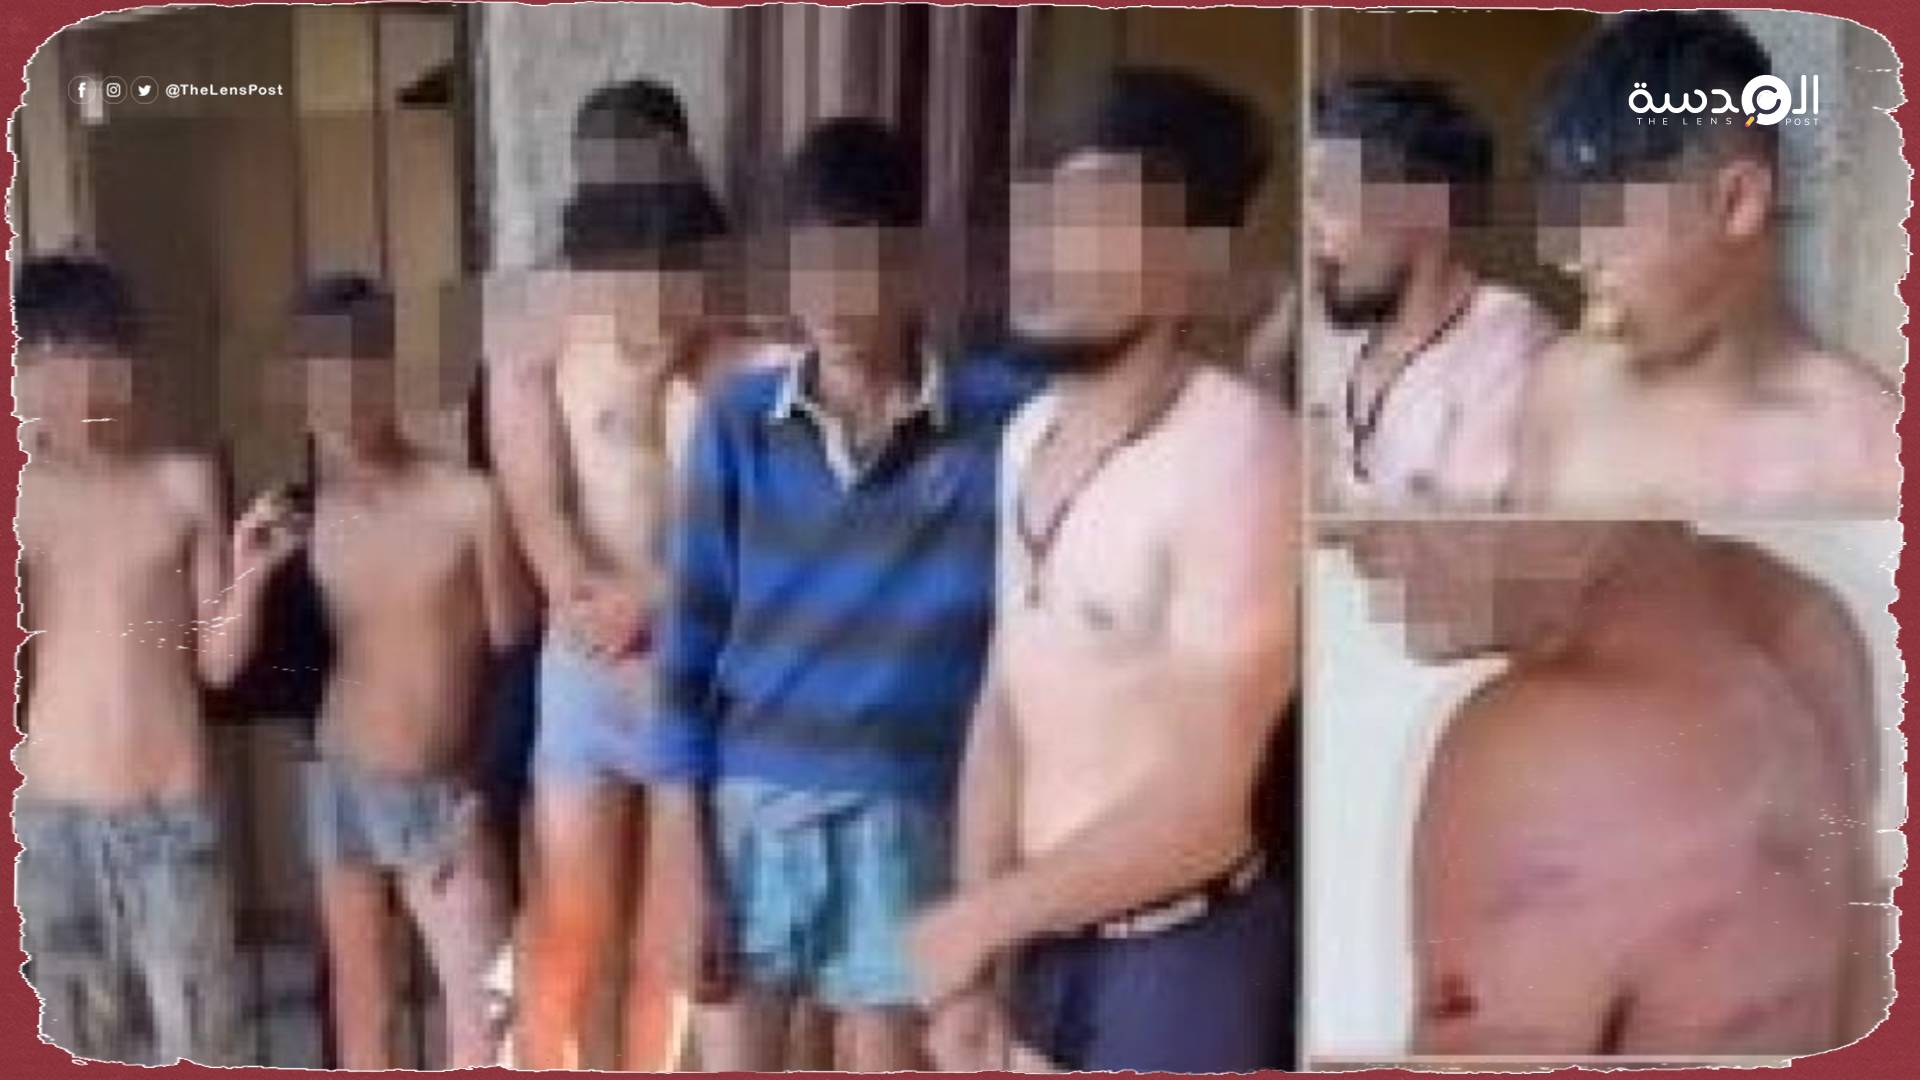 فيديوهات لتعذيب لبنانيين وسوريين تثير غضب مواقع التواصل الاجتماعي 